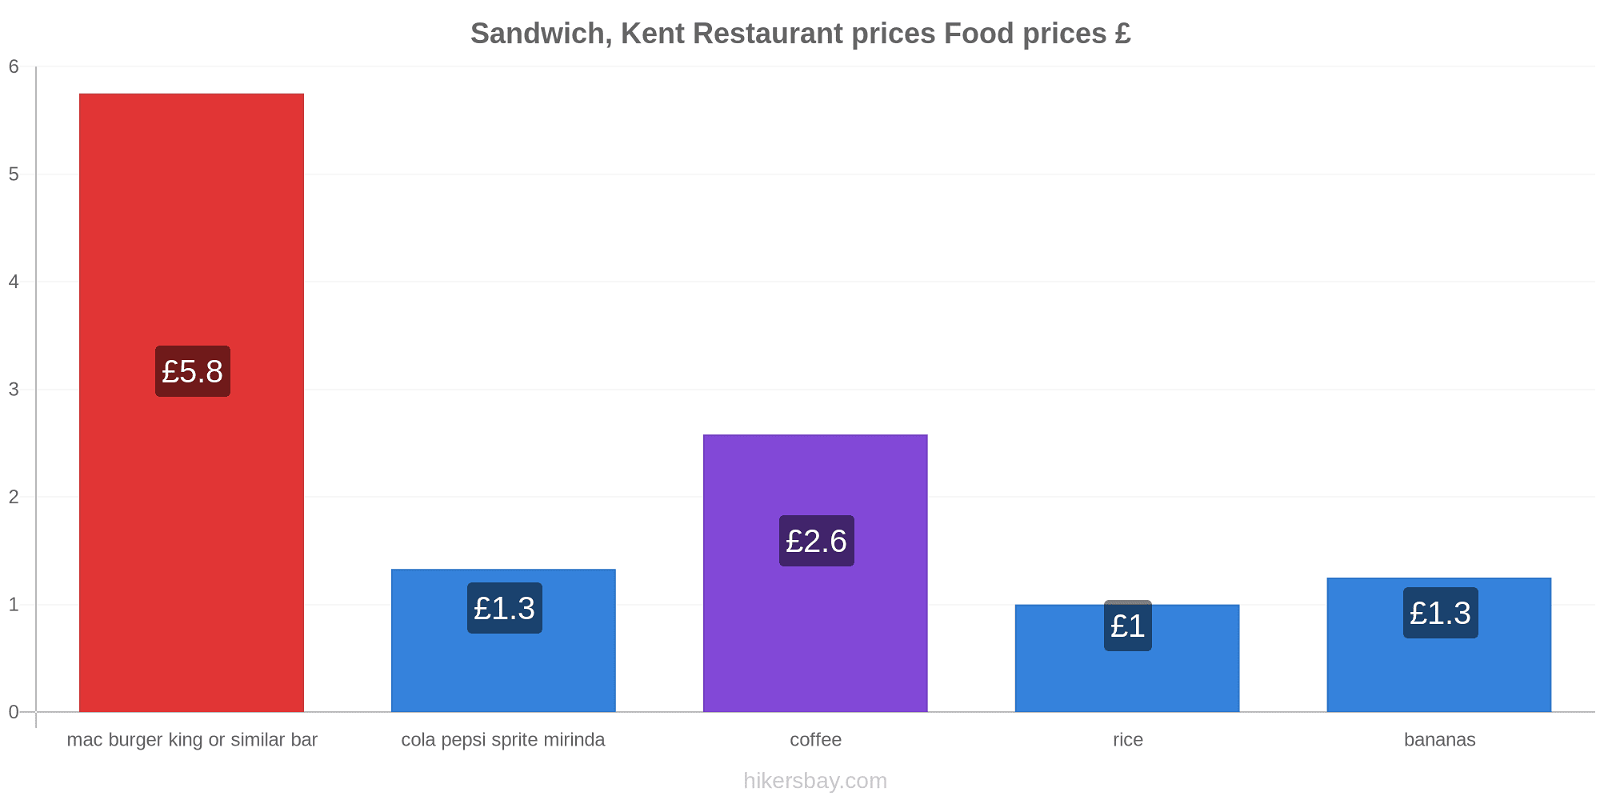 Sandwich, Kent price changes hikersbay.com